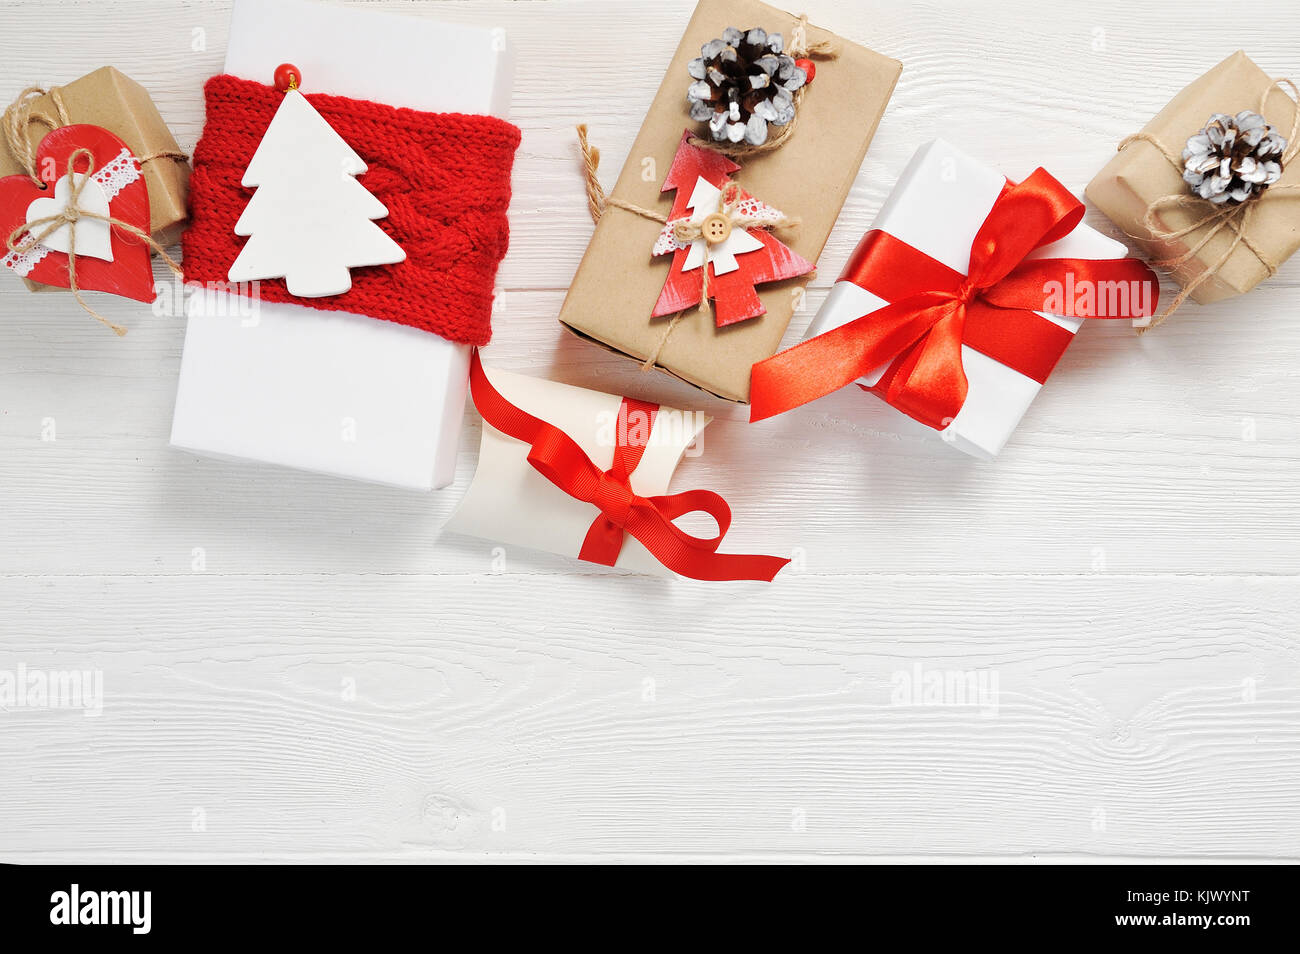 Natale regalo Scatole decorate con archetti in rosso su bianco sullo sfondo di legno. flat laico, top view photo mockup Foto Stock